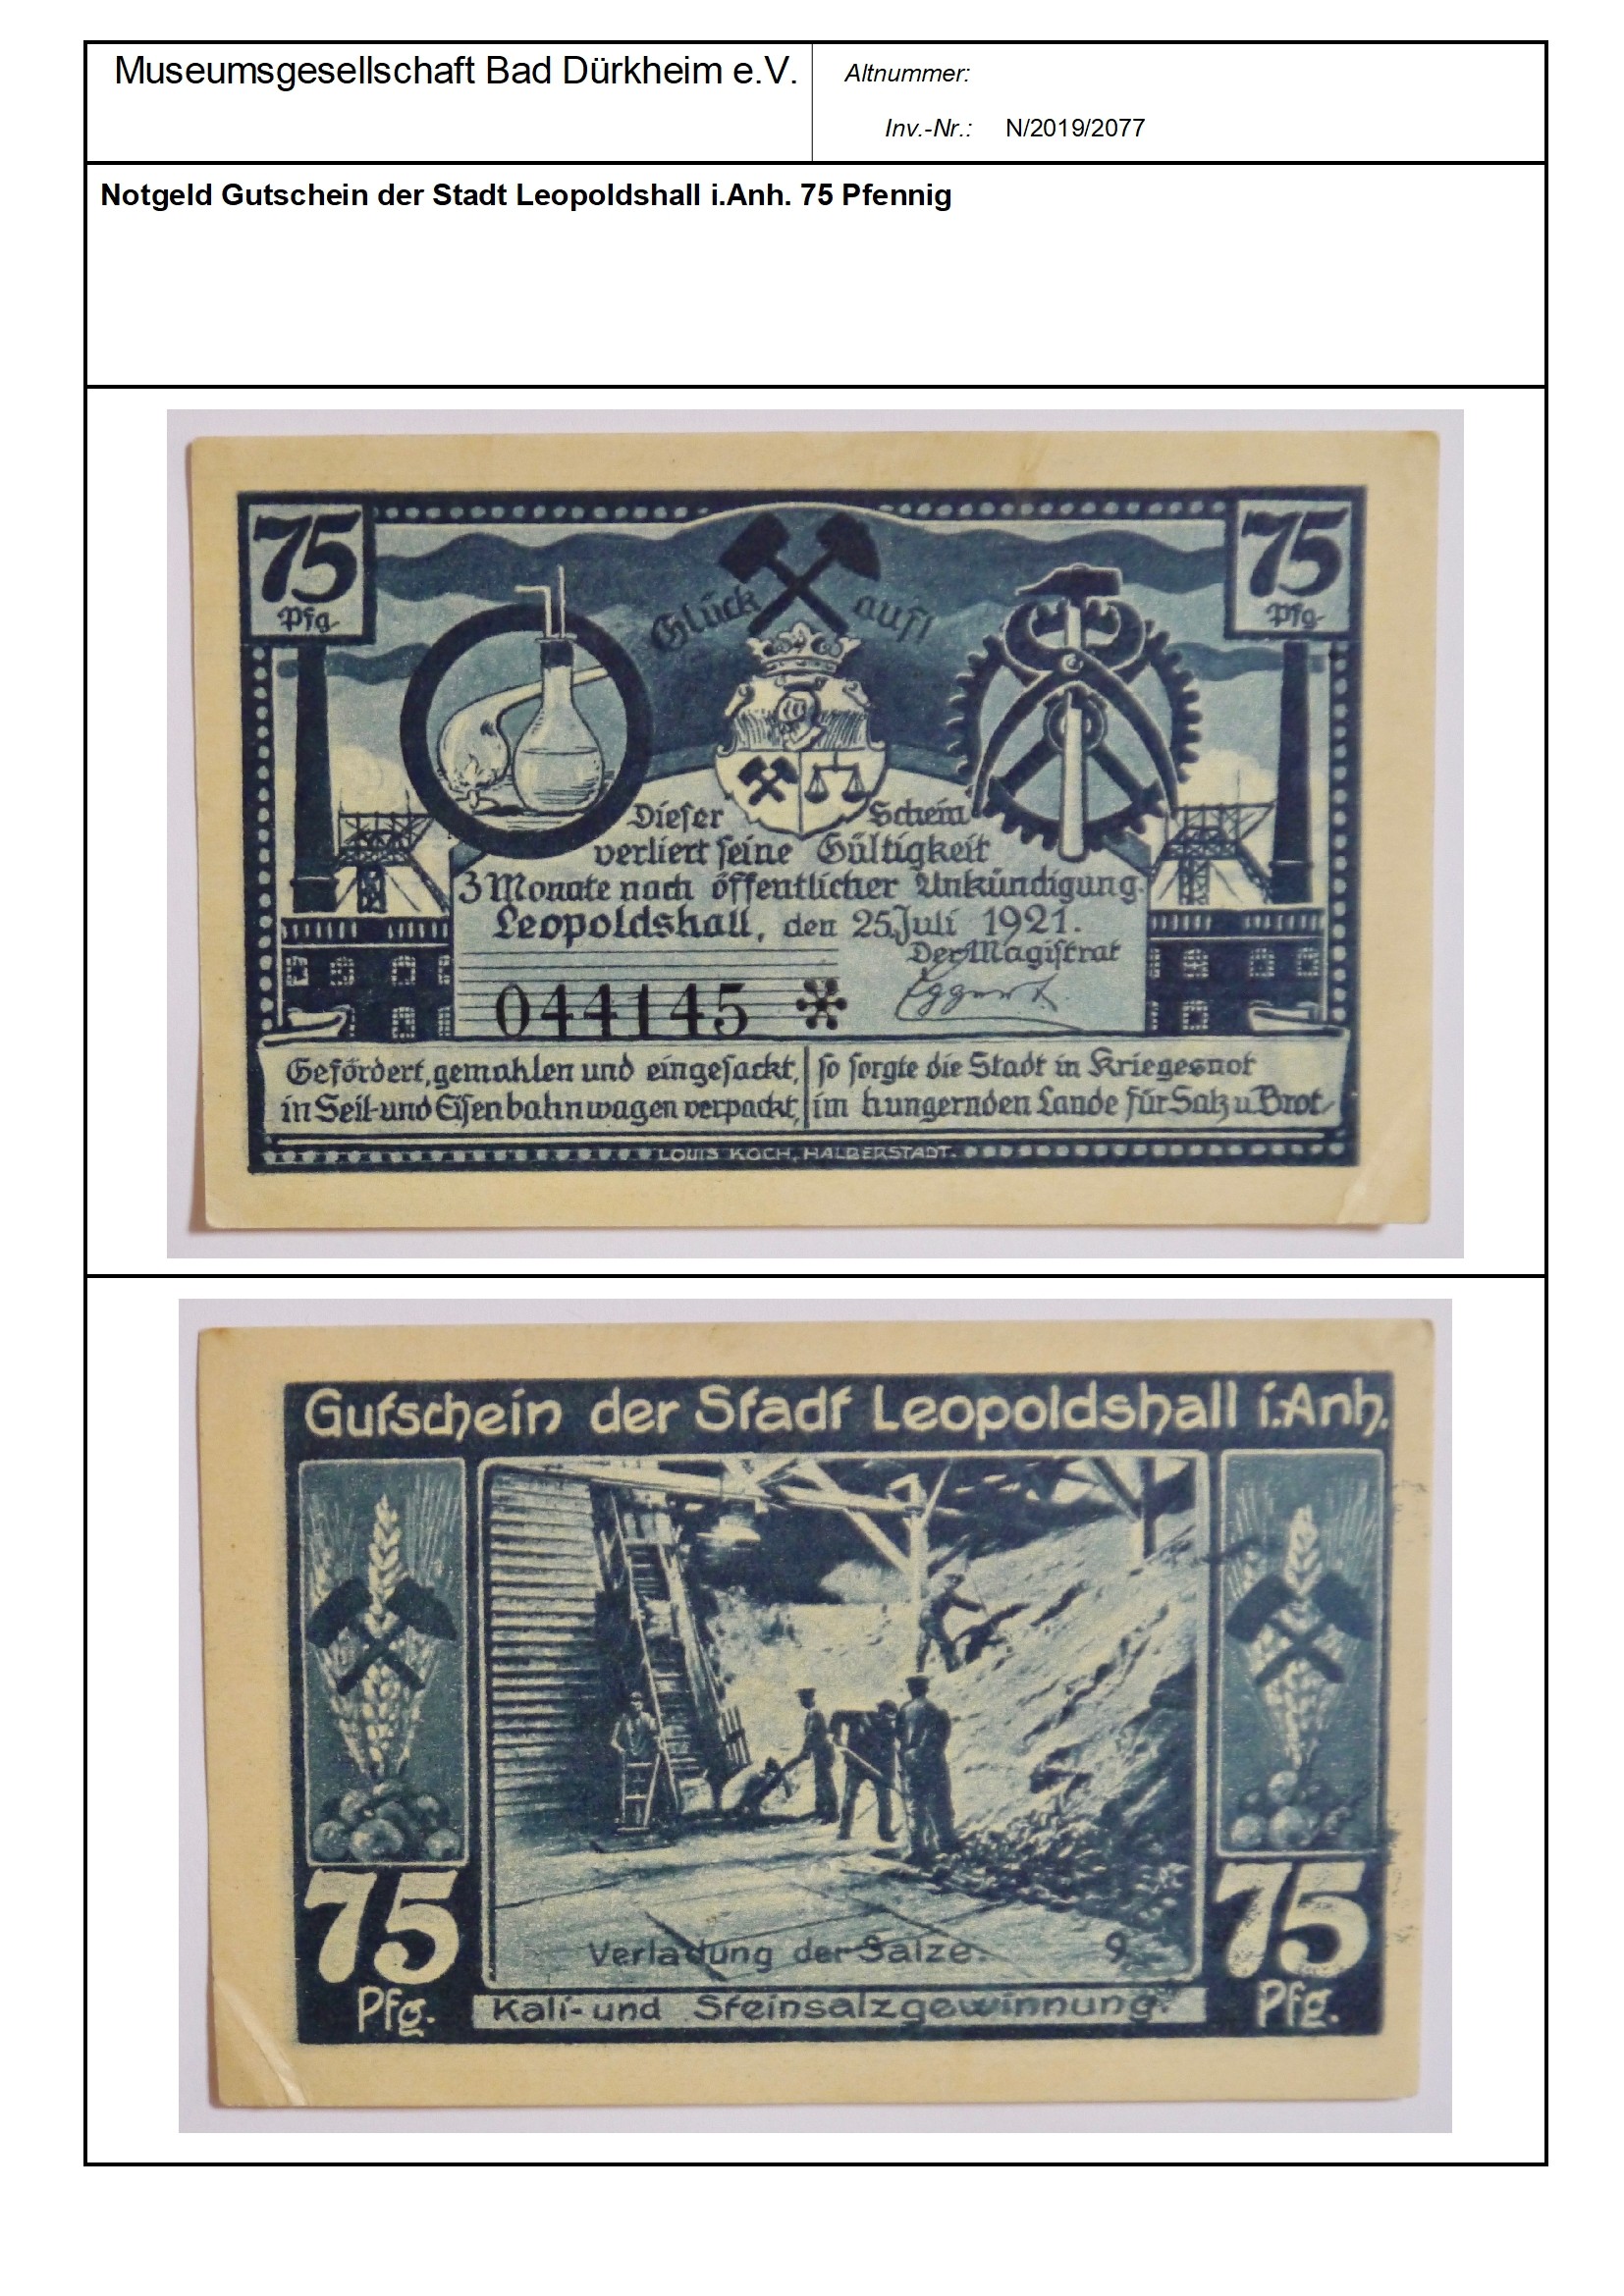 Notgeld Gutschein der Stadt Leopoldshall i.Anh. 75 PfennigSerien-Nummer: 044145 * (Museumsgesellschaft Bad Dürkheim e.V. CC BY-NC-SA)